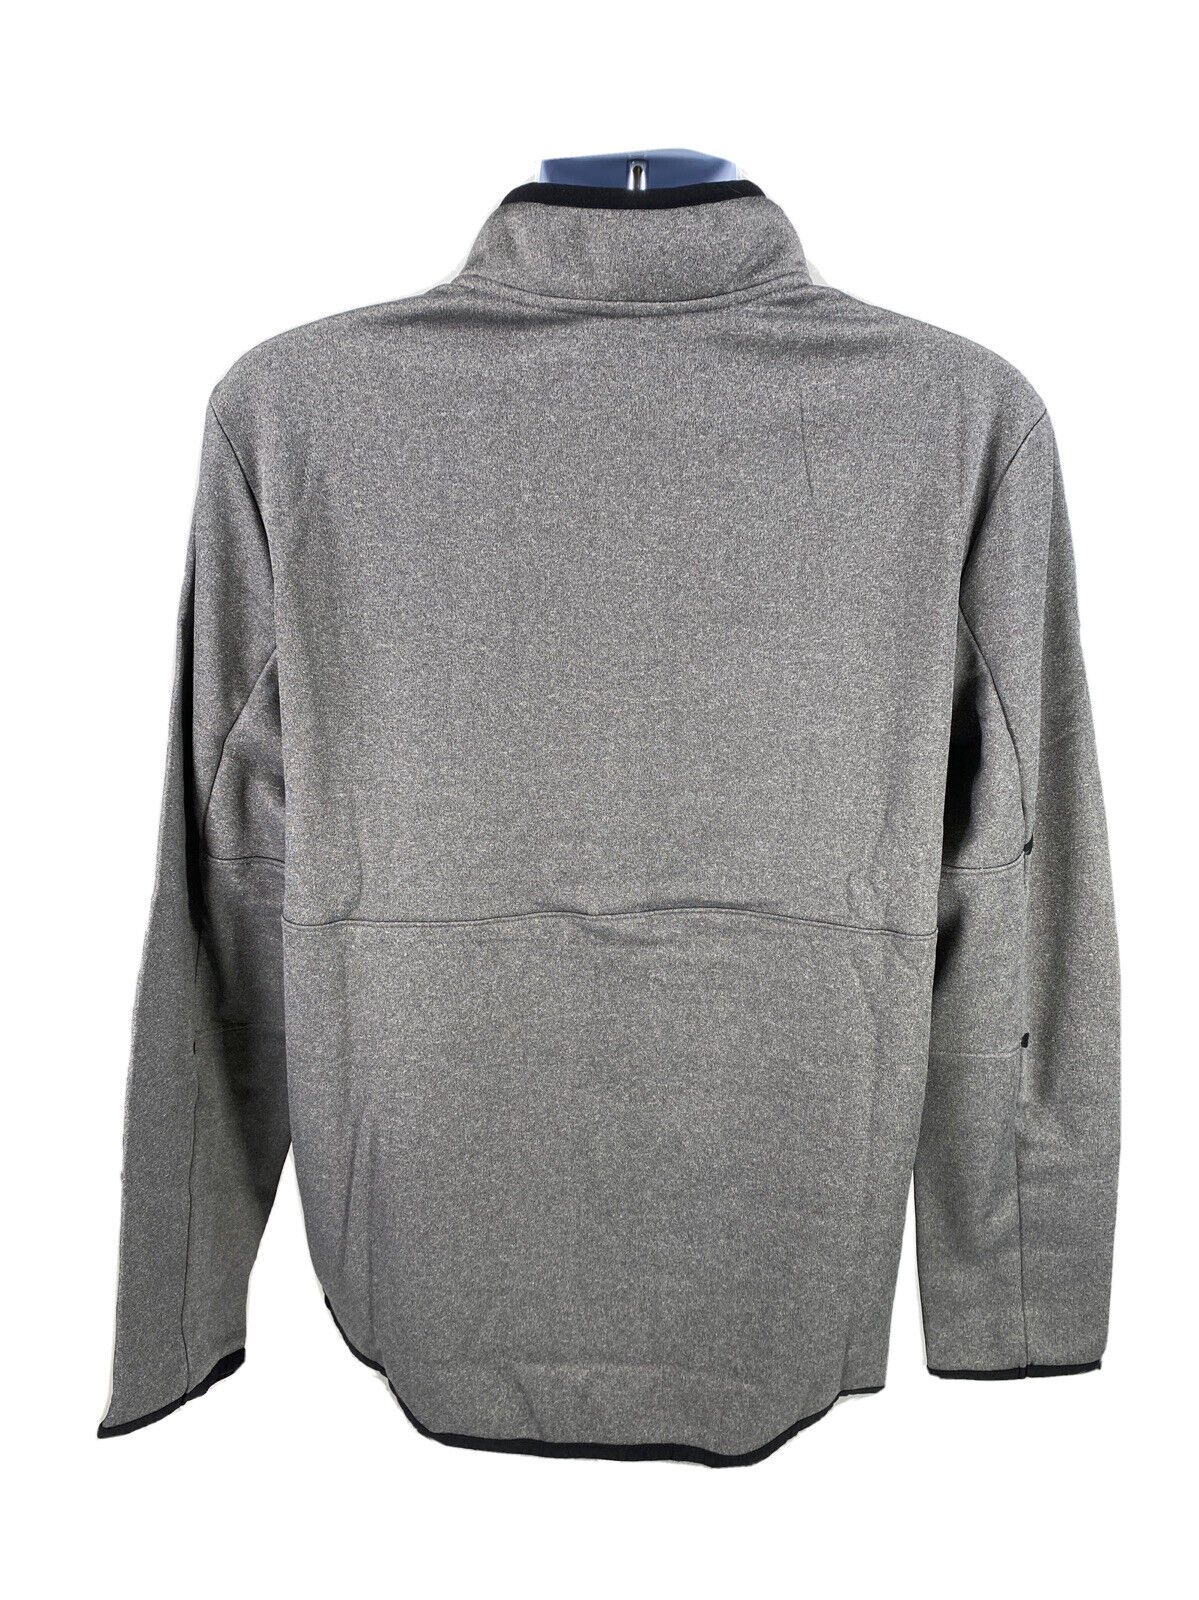 NEW Tek Gear Men's Gray Fleece Lined 1/4 Zip Pullover Sweatshirt Sz M